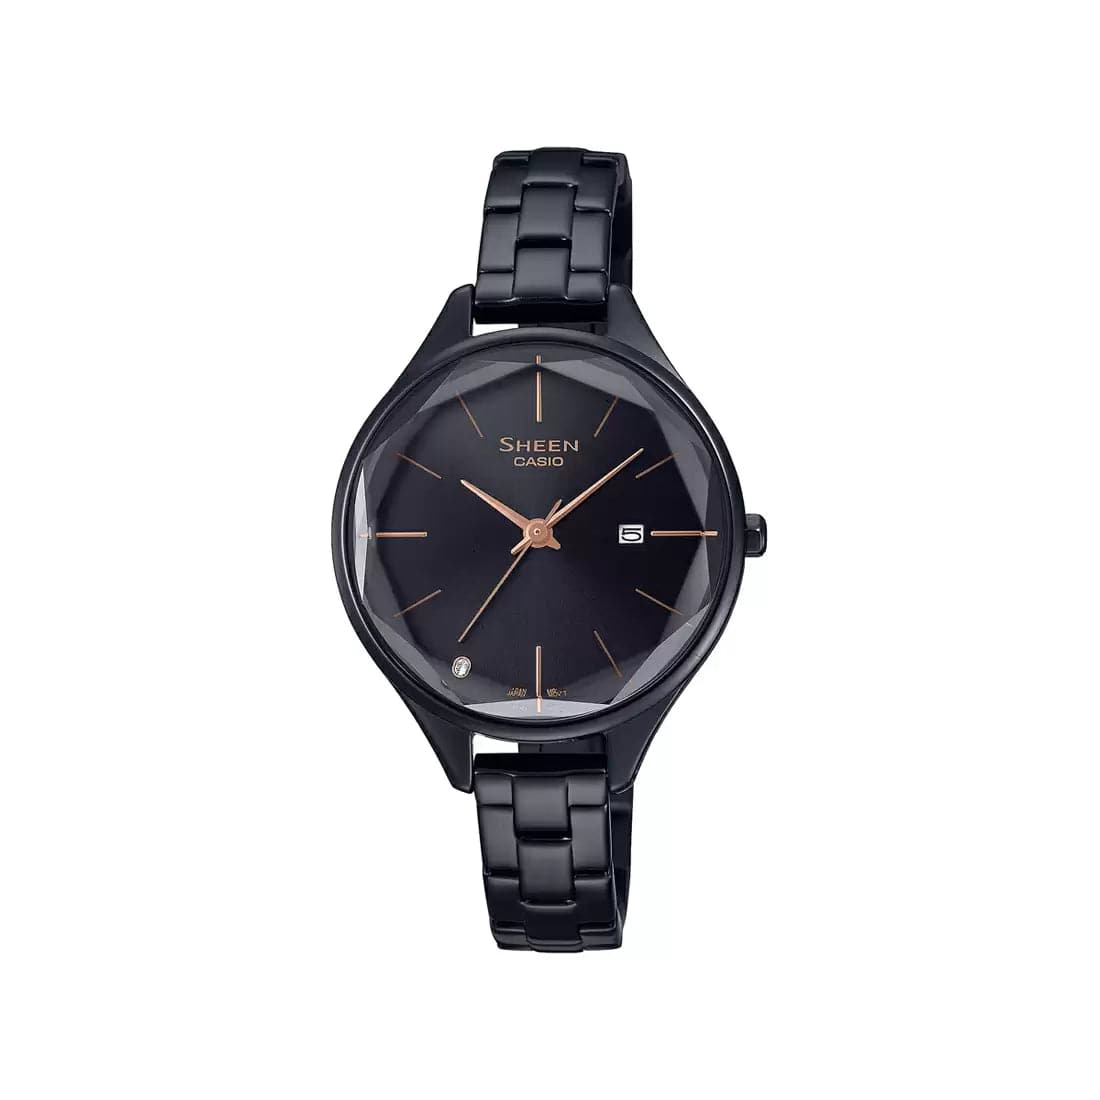 CASIO SHEEN Black Cut Glass - Women's Watch SH251 - Kamal Watch Company